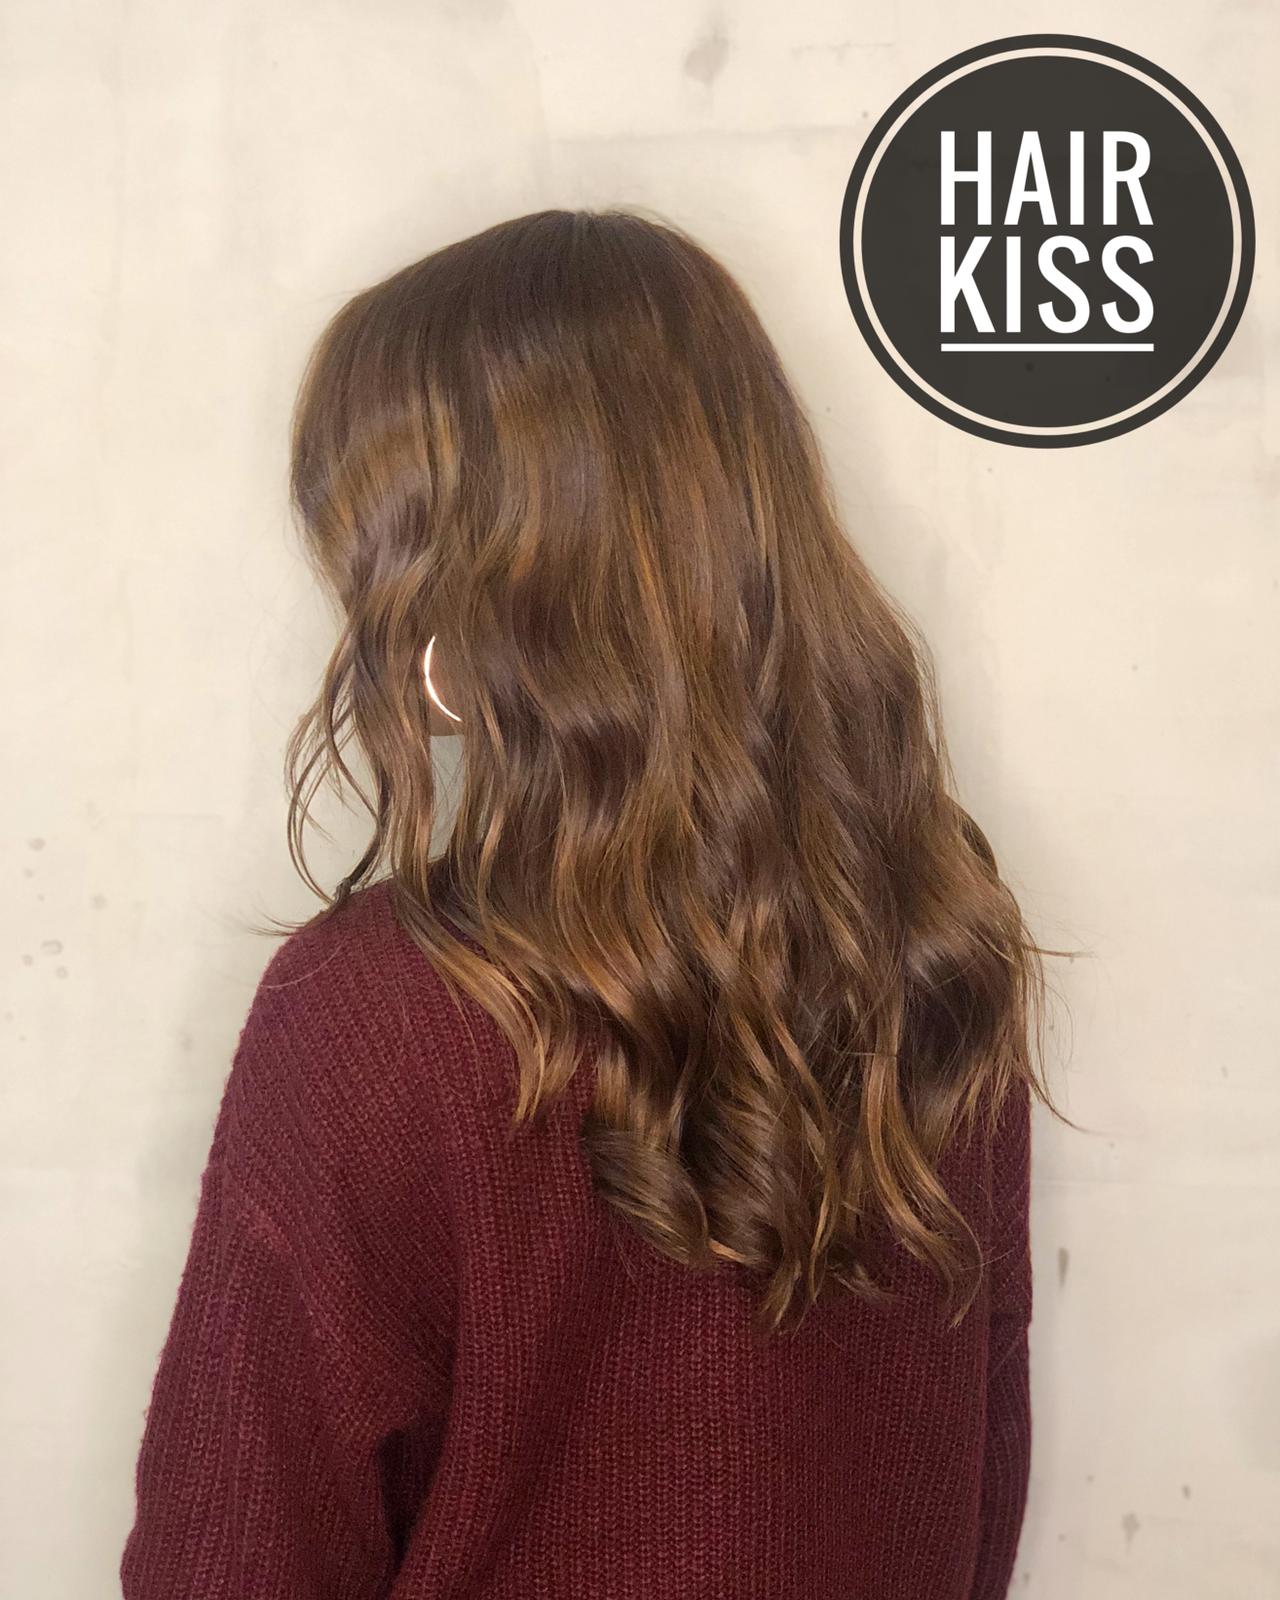 作品參考 / 最新消息:Hair kiss ❤️